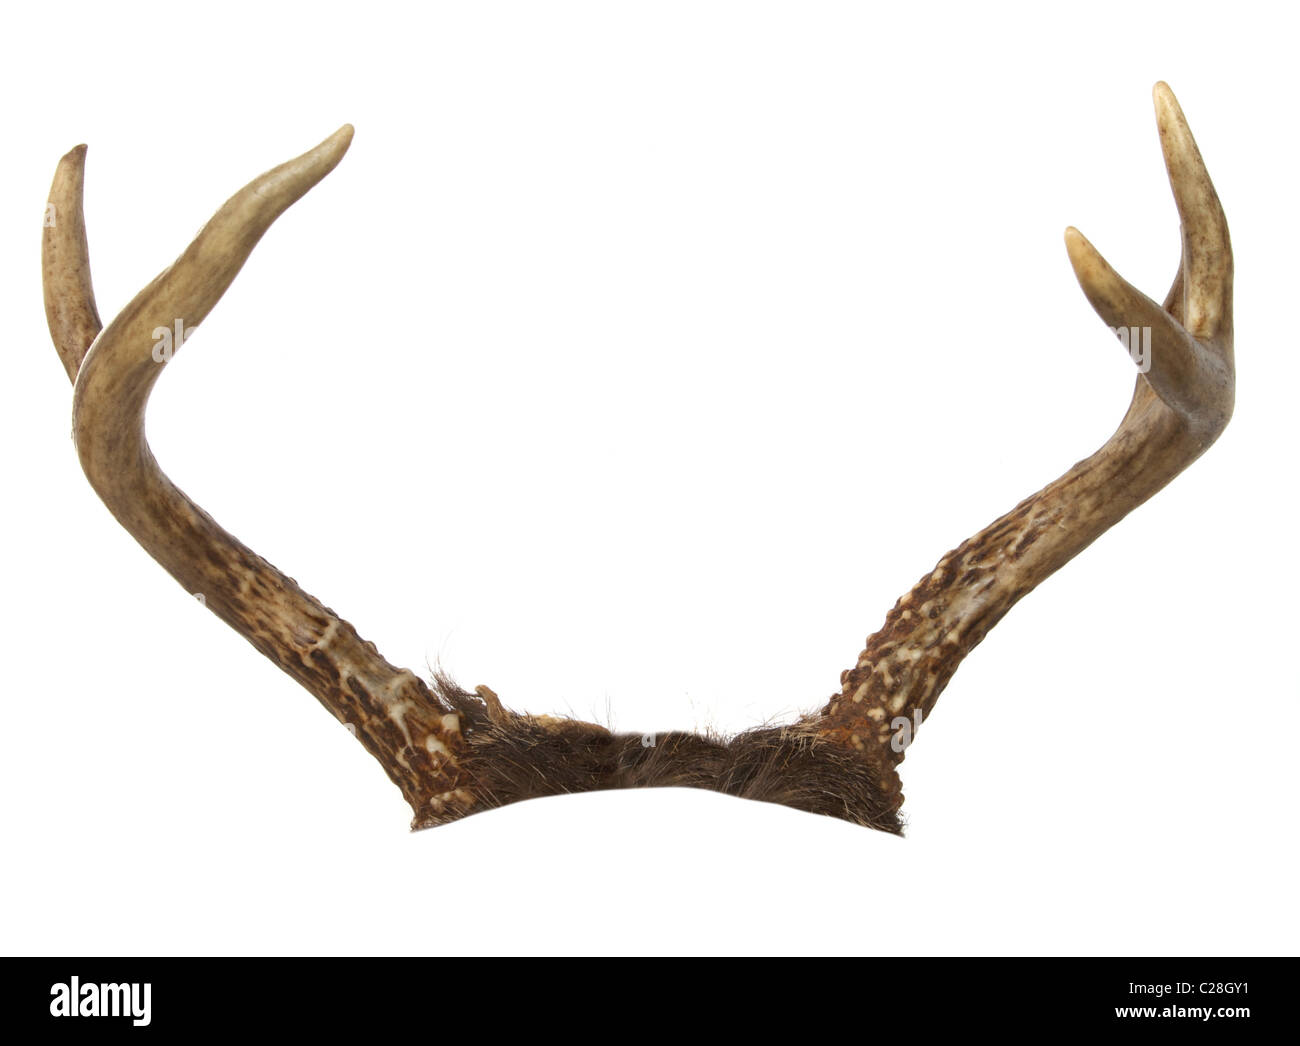 Gegabelten Geweih von einer Whitetail Deer isoliert auf weiss. Beschnitten, so dass sie an einem anderen Tier platziert werden können. Stockfoto